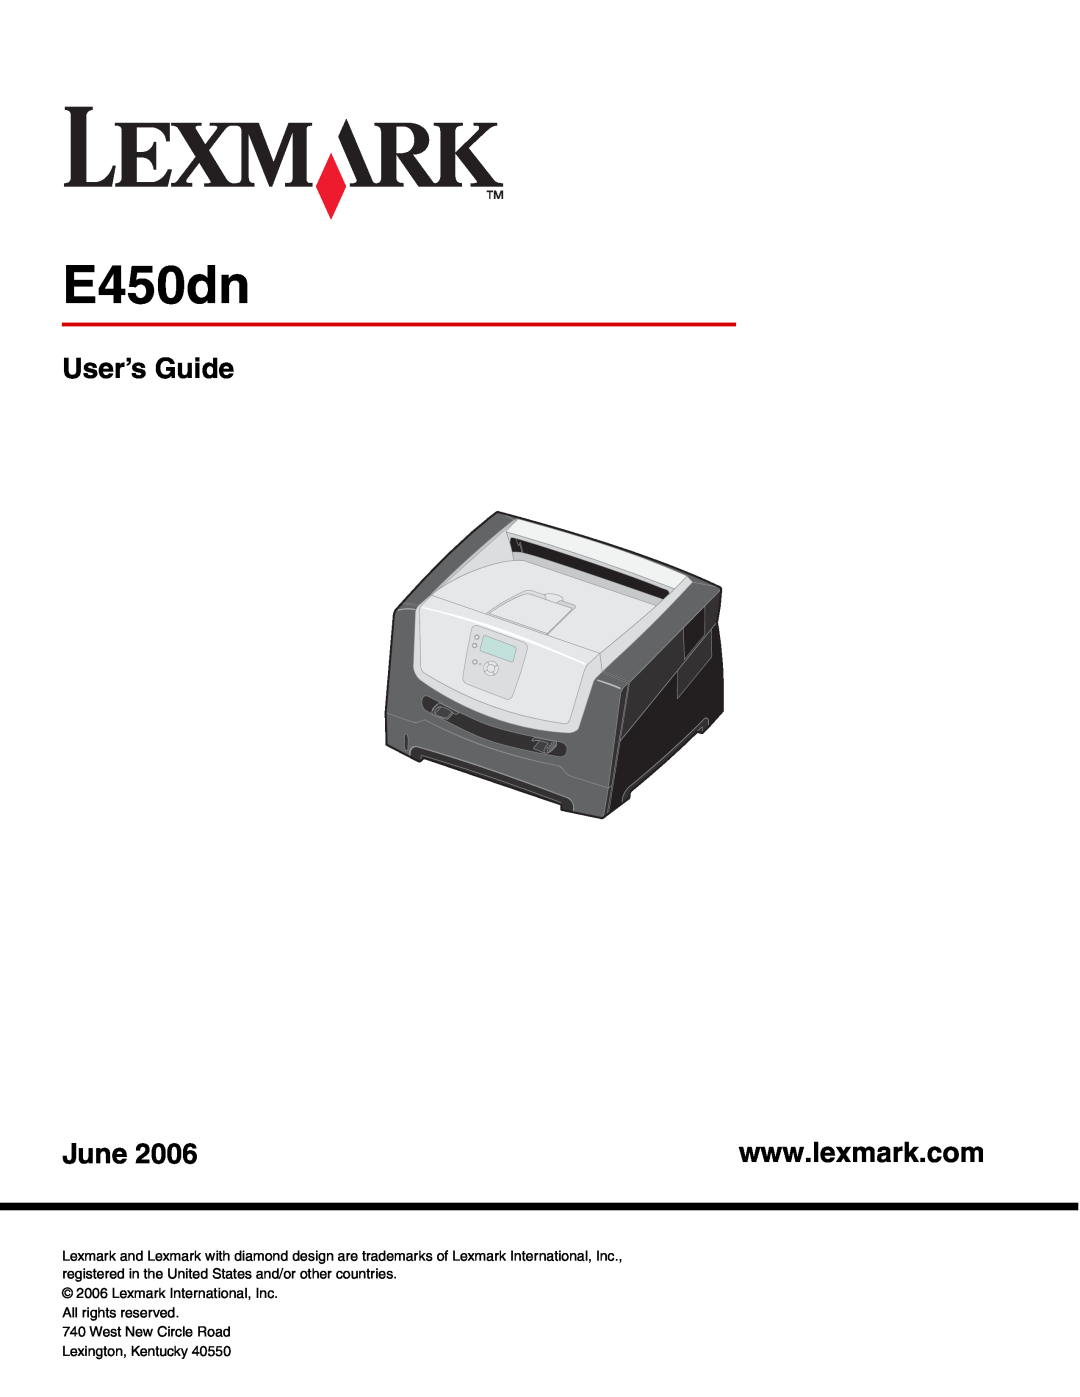 Lexmark manual E450dn, User’s Guide, June 